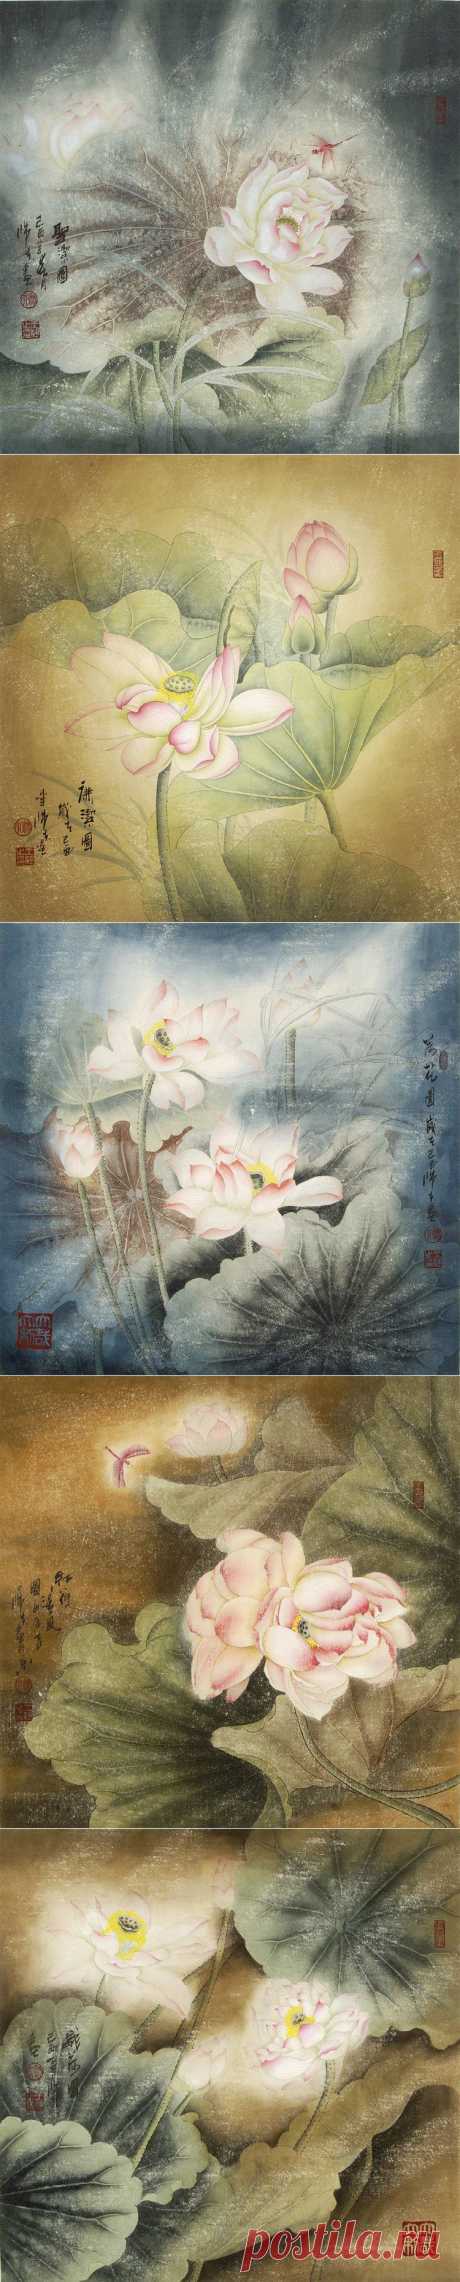 традиционная живопись китая.